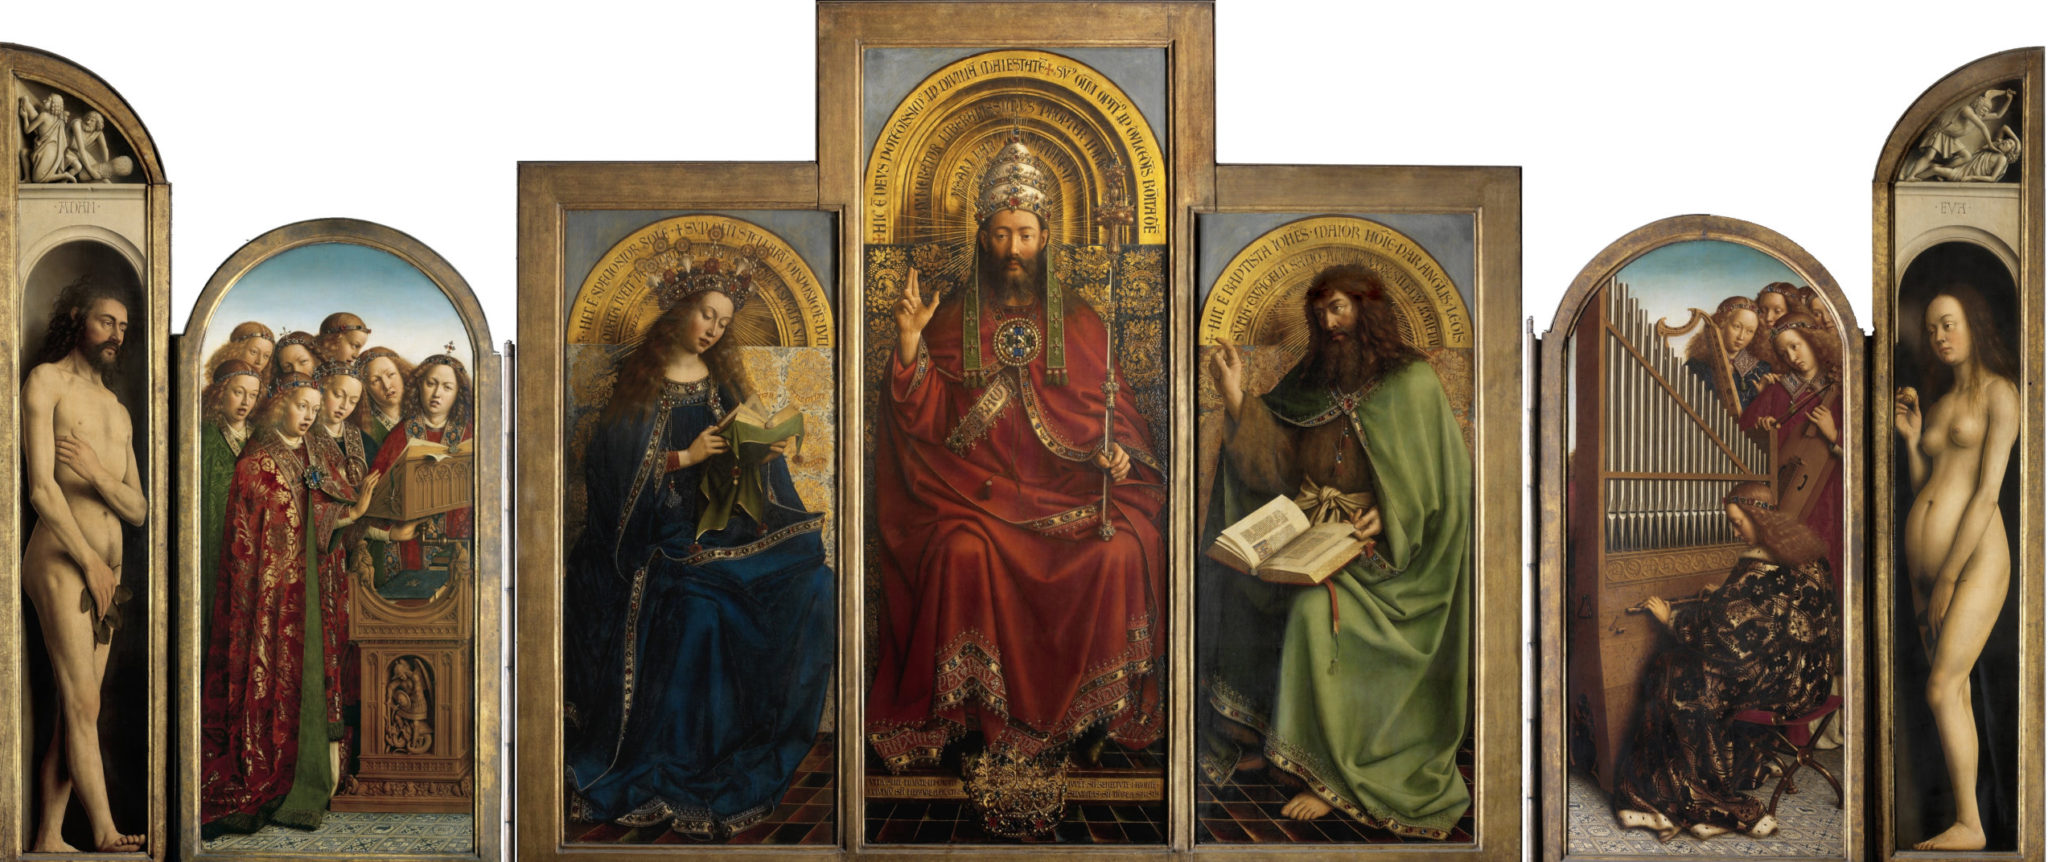 ヘントの祭壇画に広がる細密描写と色彩の世界